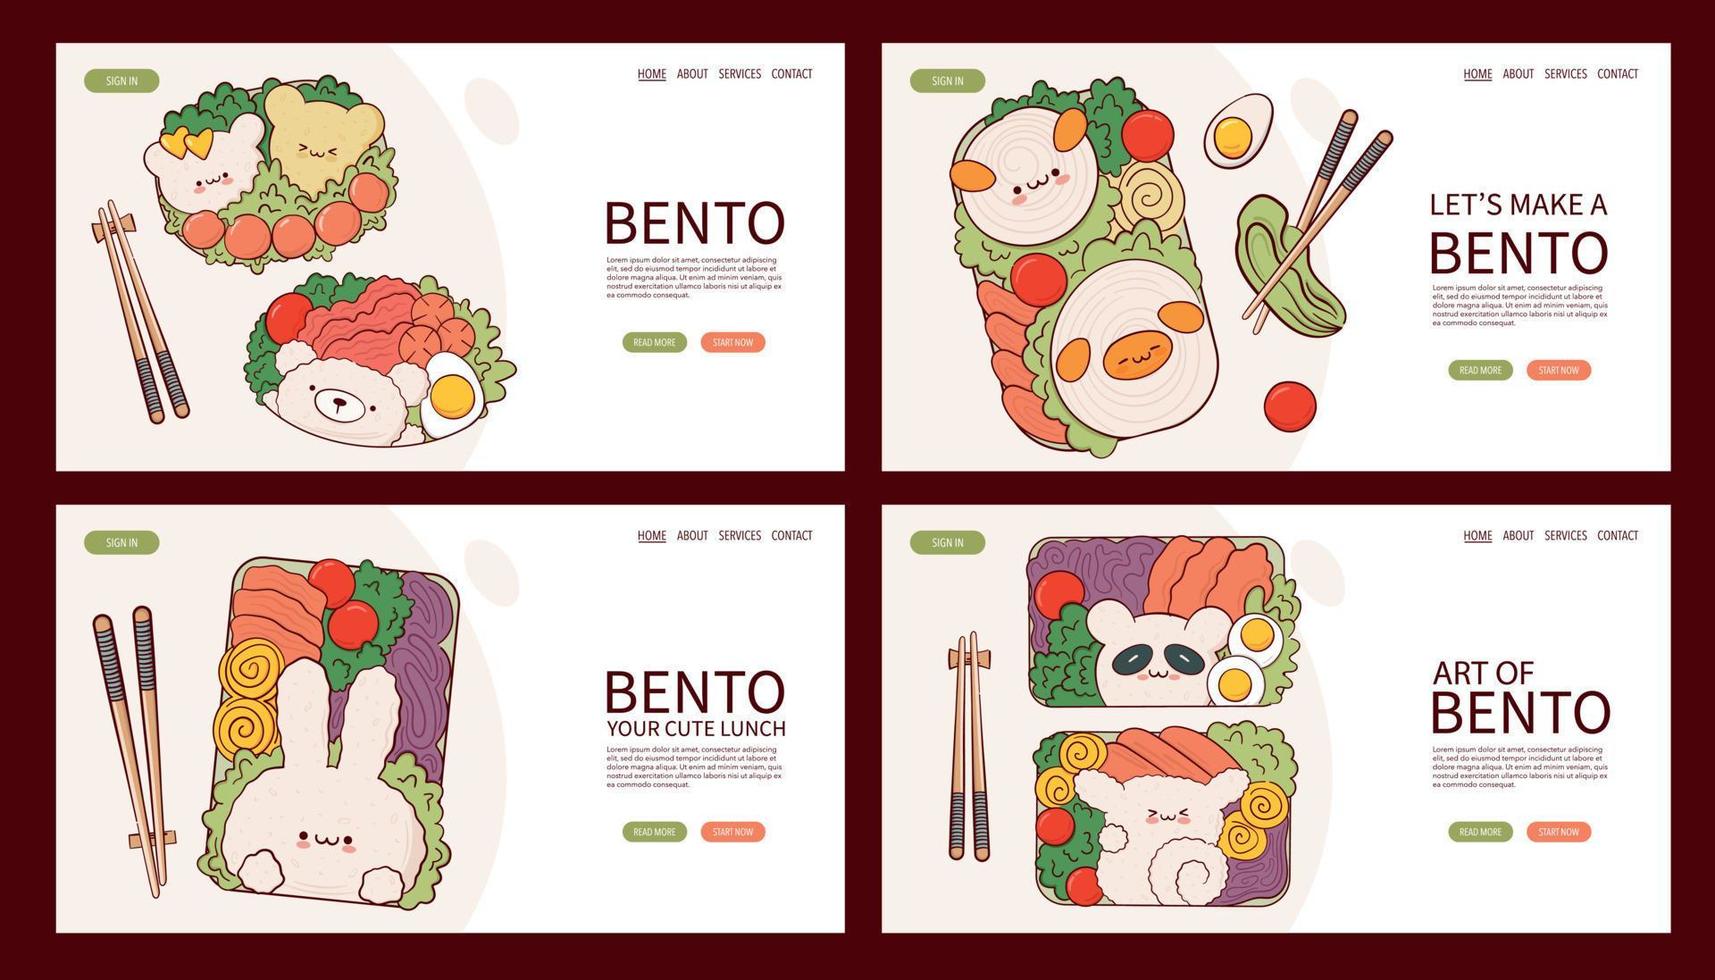 página web dibujar divertido kawaii bento box cocina casera preparación de comida para llevar ilustración vectorial. comida tradicional asiática japonesa, cocina, concepto de menú. banner, sitio web, publicidad en estilo de dibujos animados de garabatos. vector